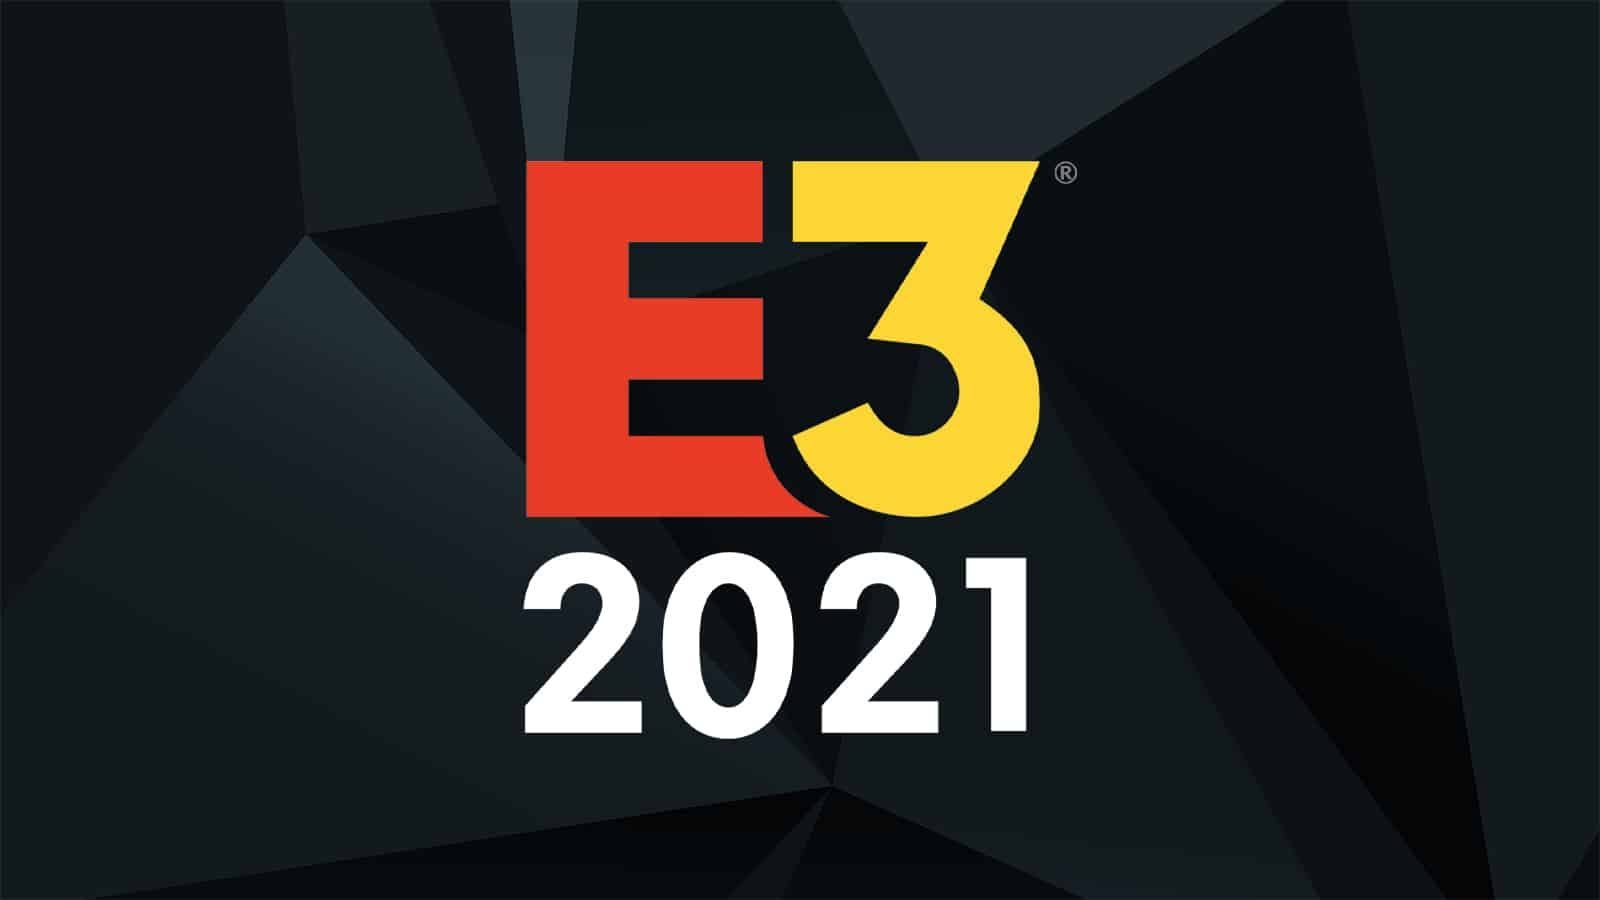 Un tas de jeux prévus pour l'E3 2021 en fuite?